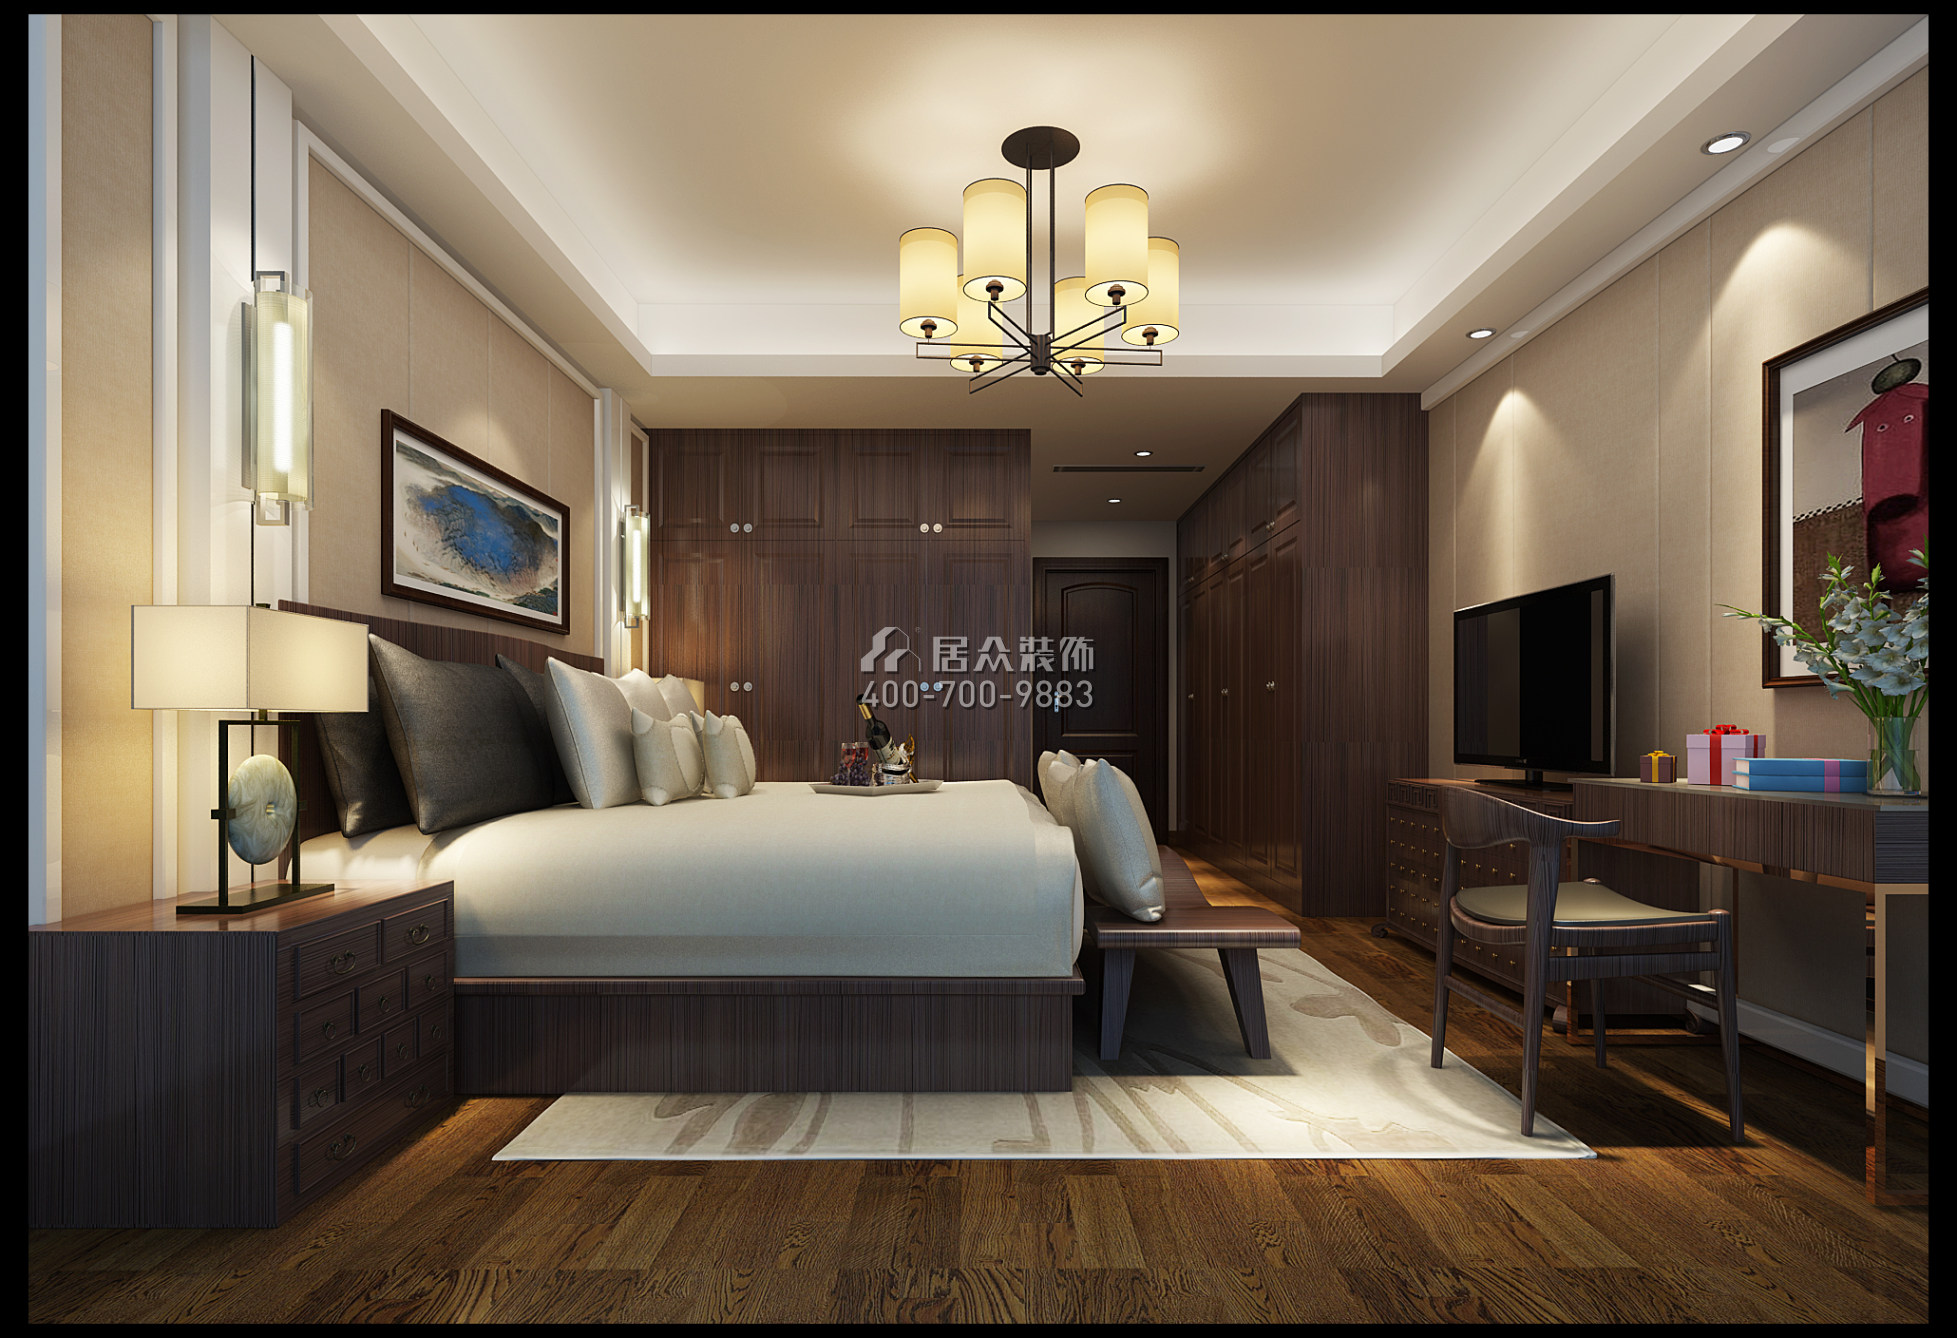 五矿万境水岸240平方米中式风格平层户型卧室装修效果图